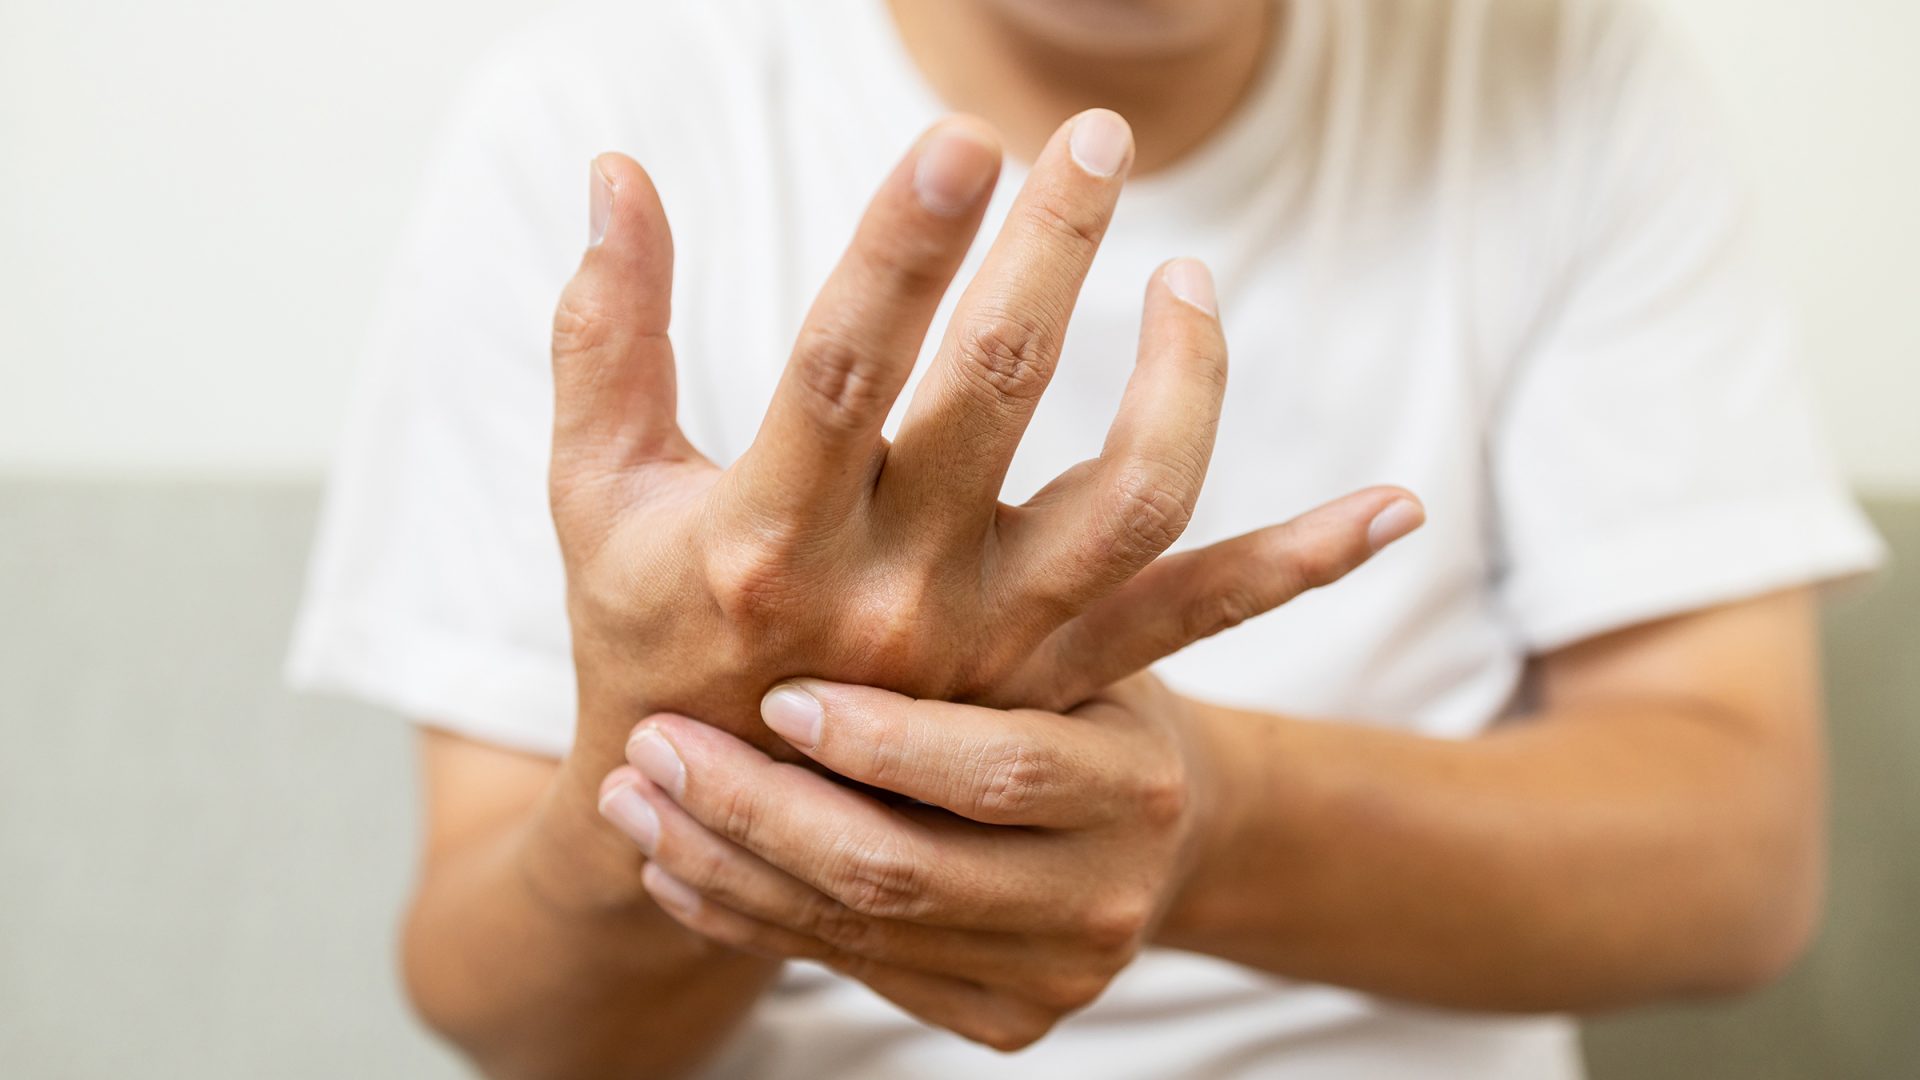 التشنجات في إحدى اليدين أو القدمين وتنتشر تدريجيًا إلى الجانب الآخر من الجسم، من أعراض مرض باركنسون